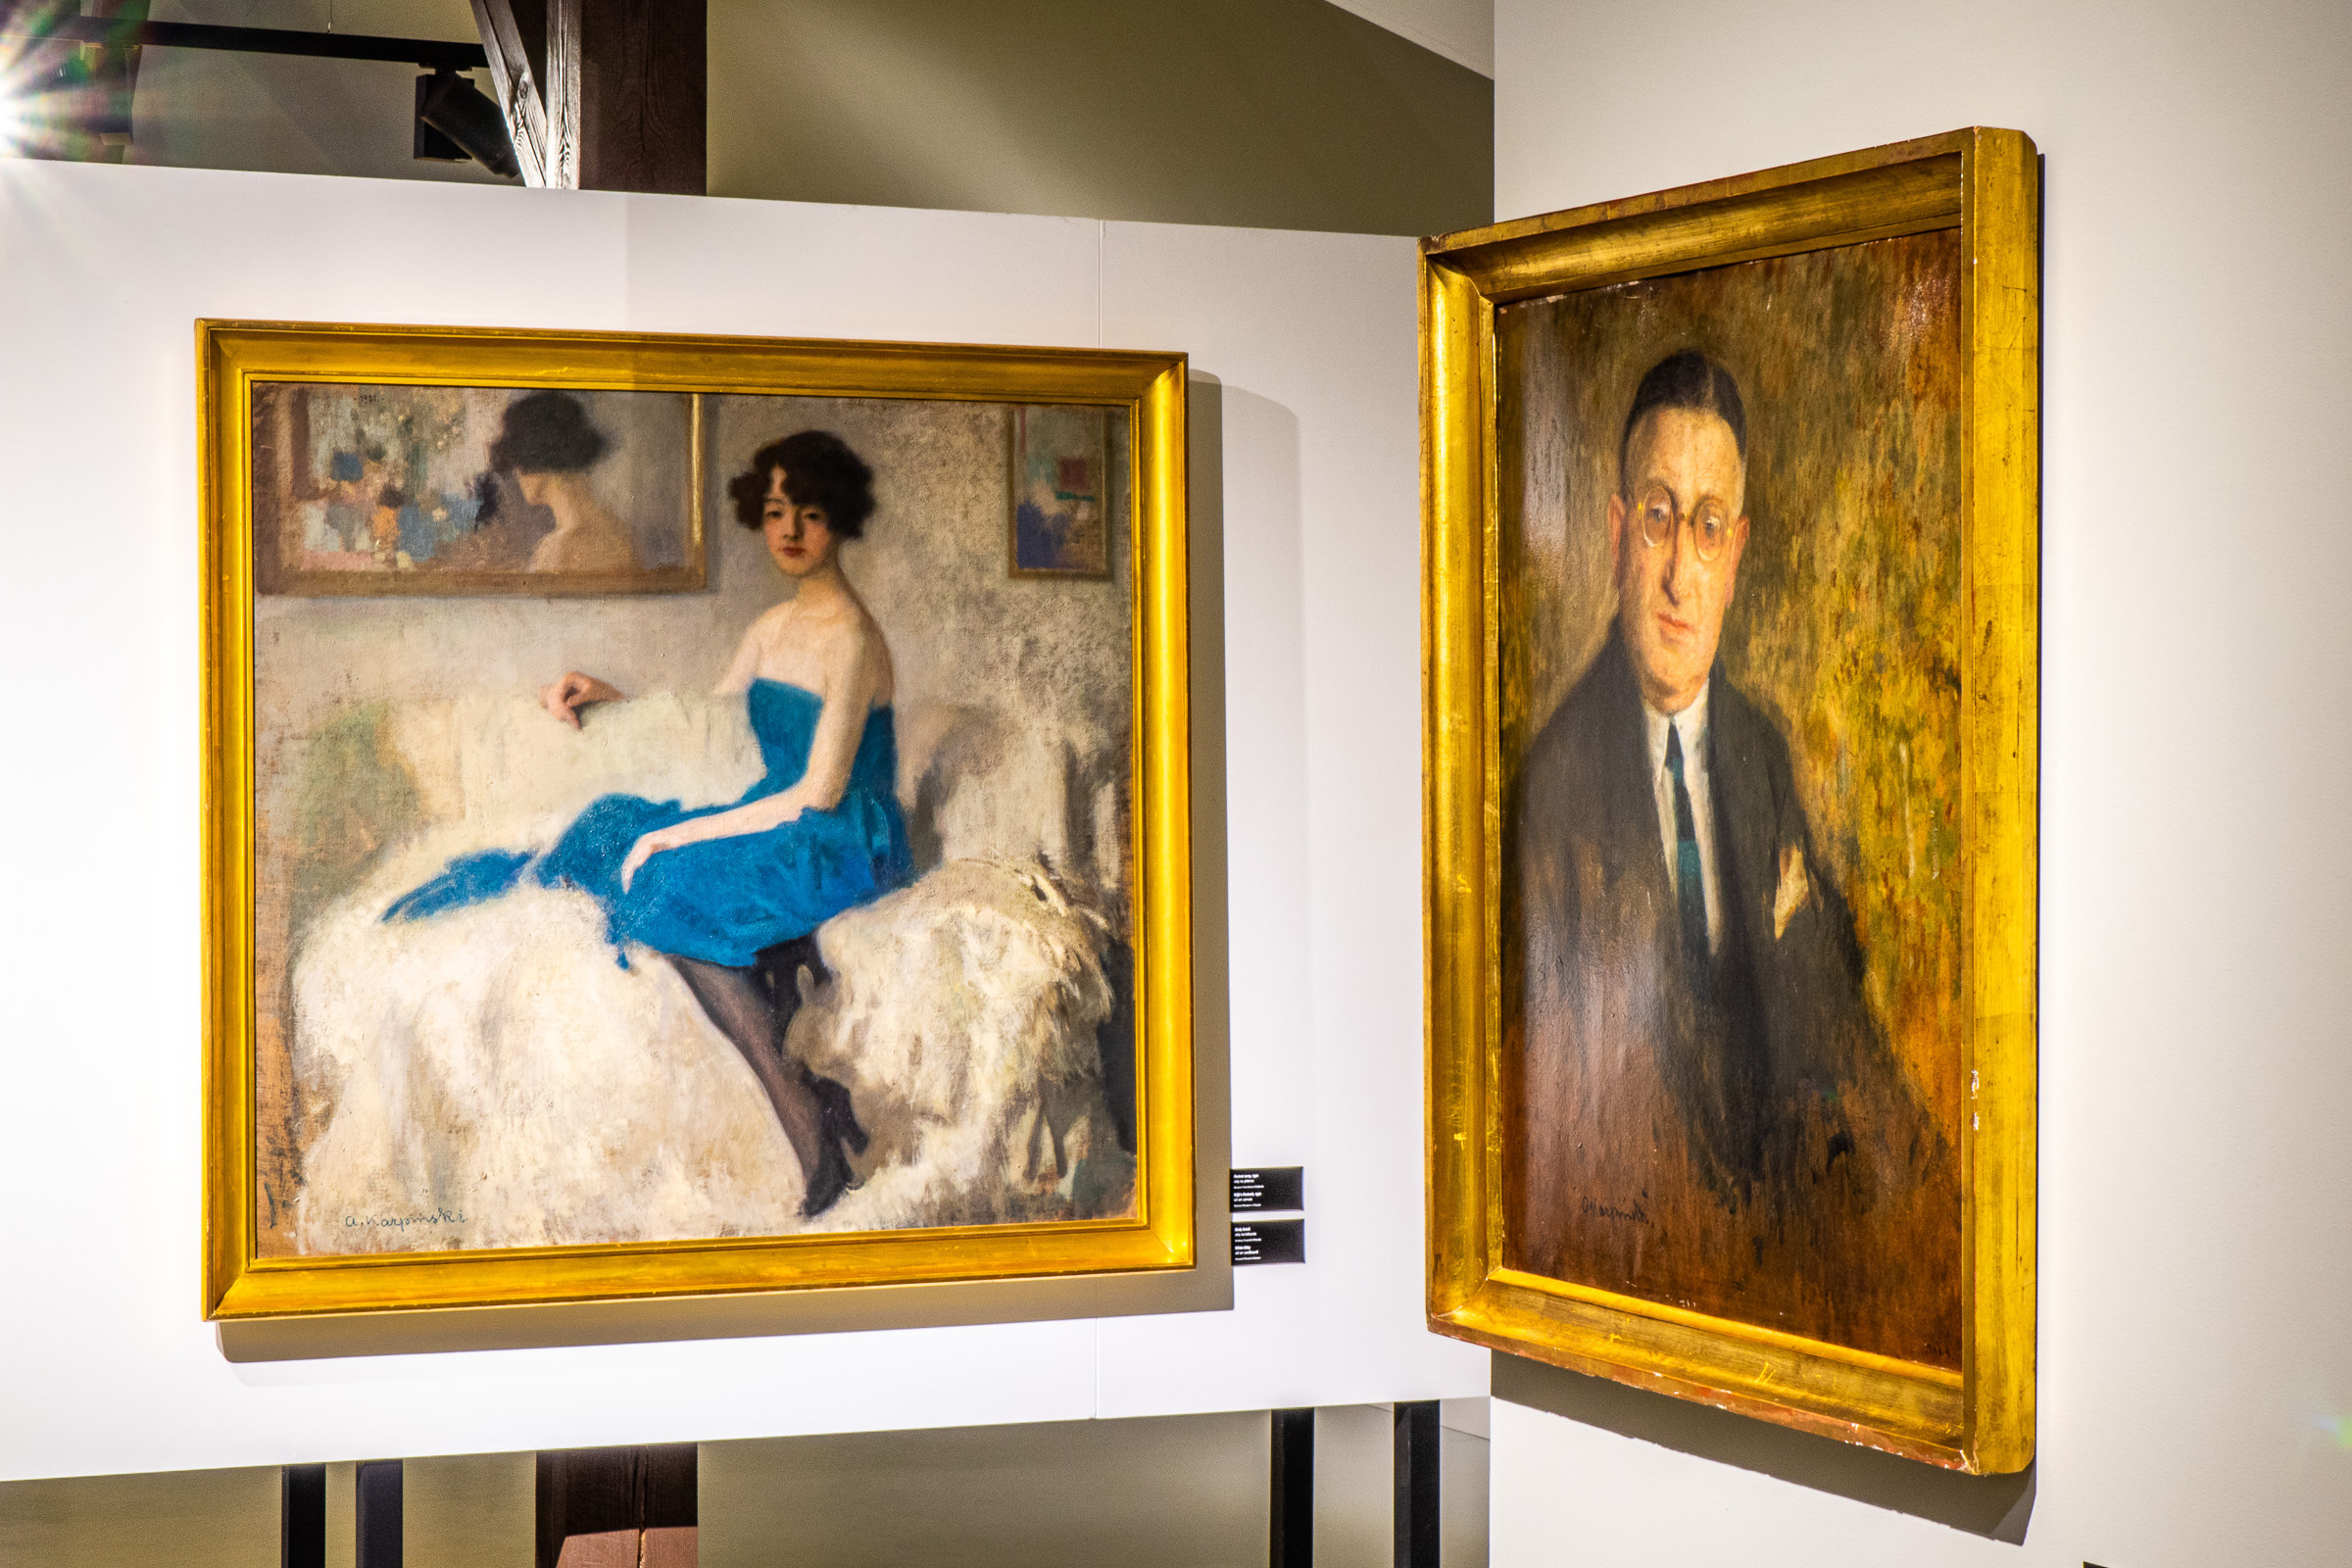 Dwa obrazy powieszone na ścianie. Na pierwszym kobieta w niebieskiej sukni siedząca na białej sofie. Na drugim portret mężczyzny w okularach i garnniturze.